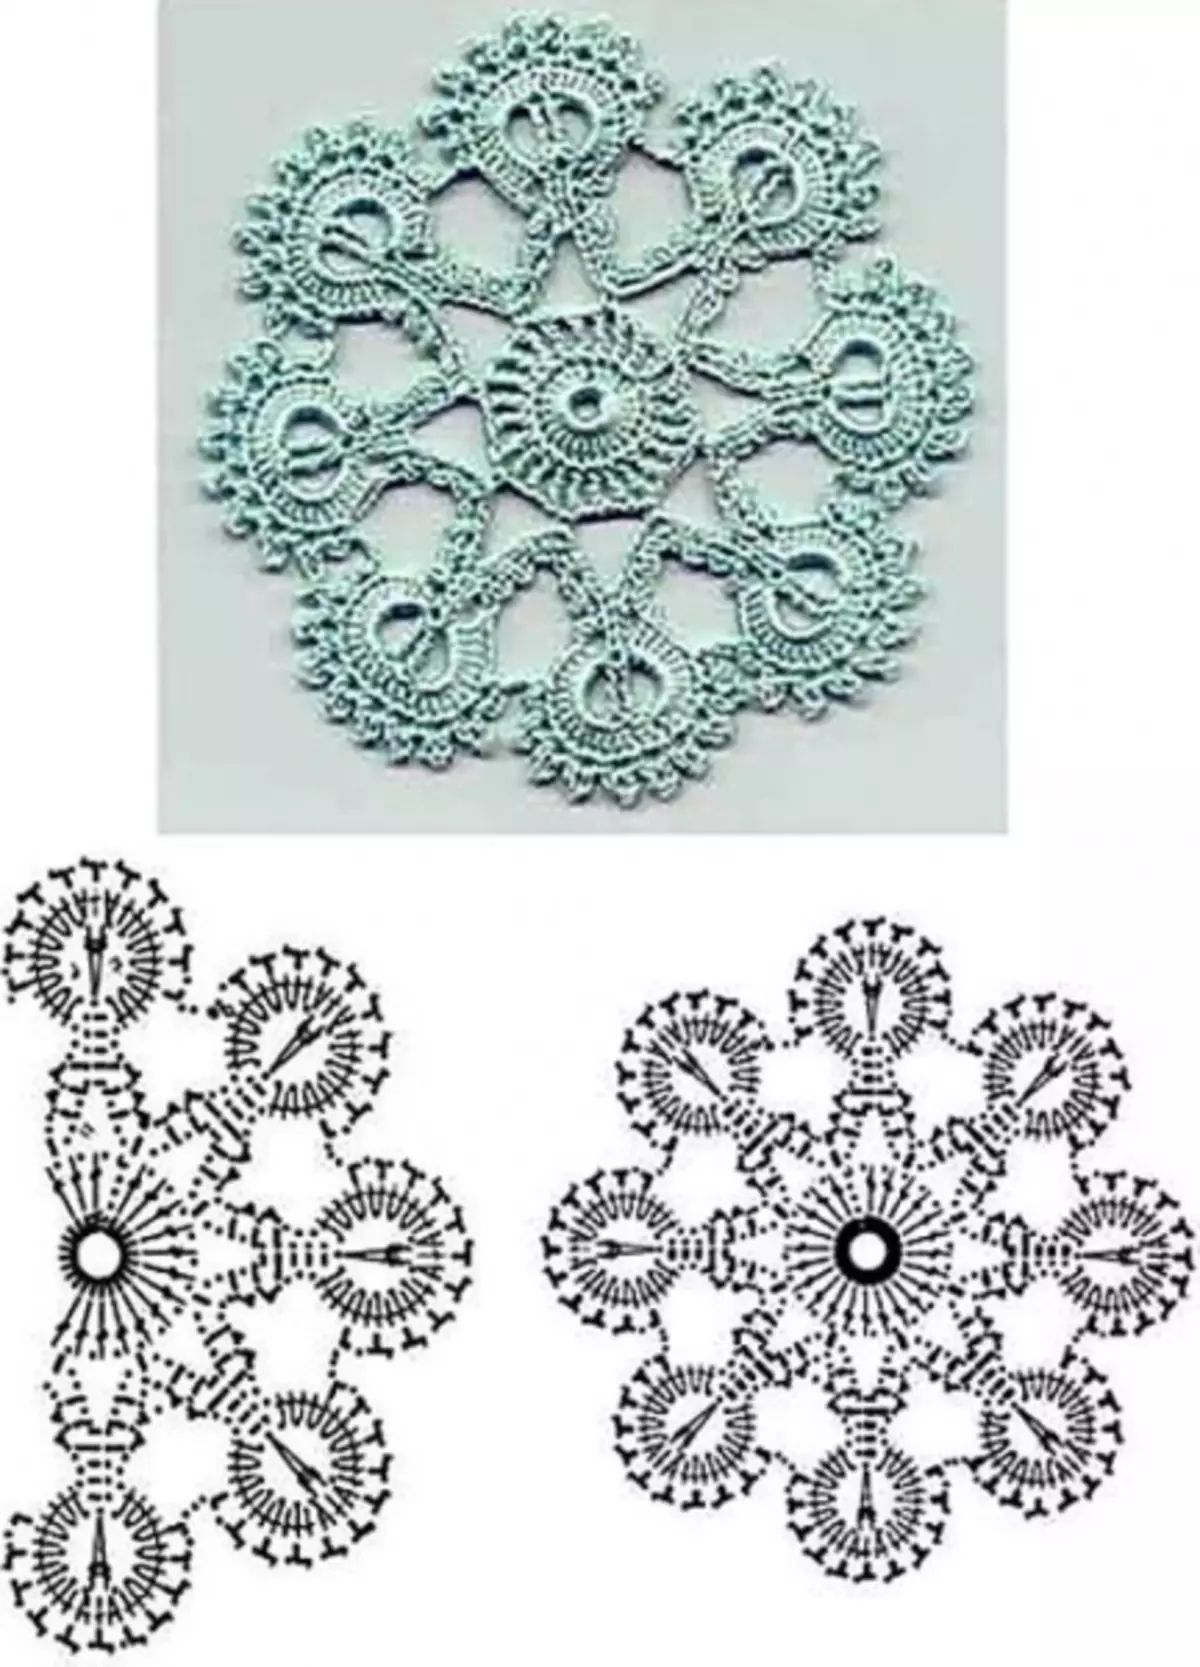 Crochet qauv knitting thiab motifs - kuv xaiv